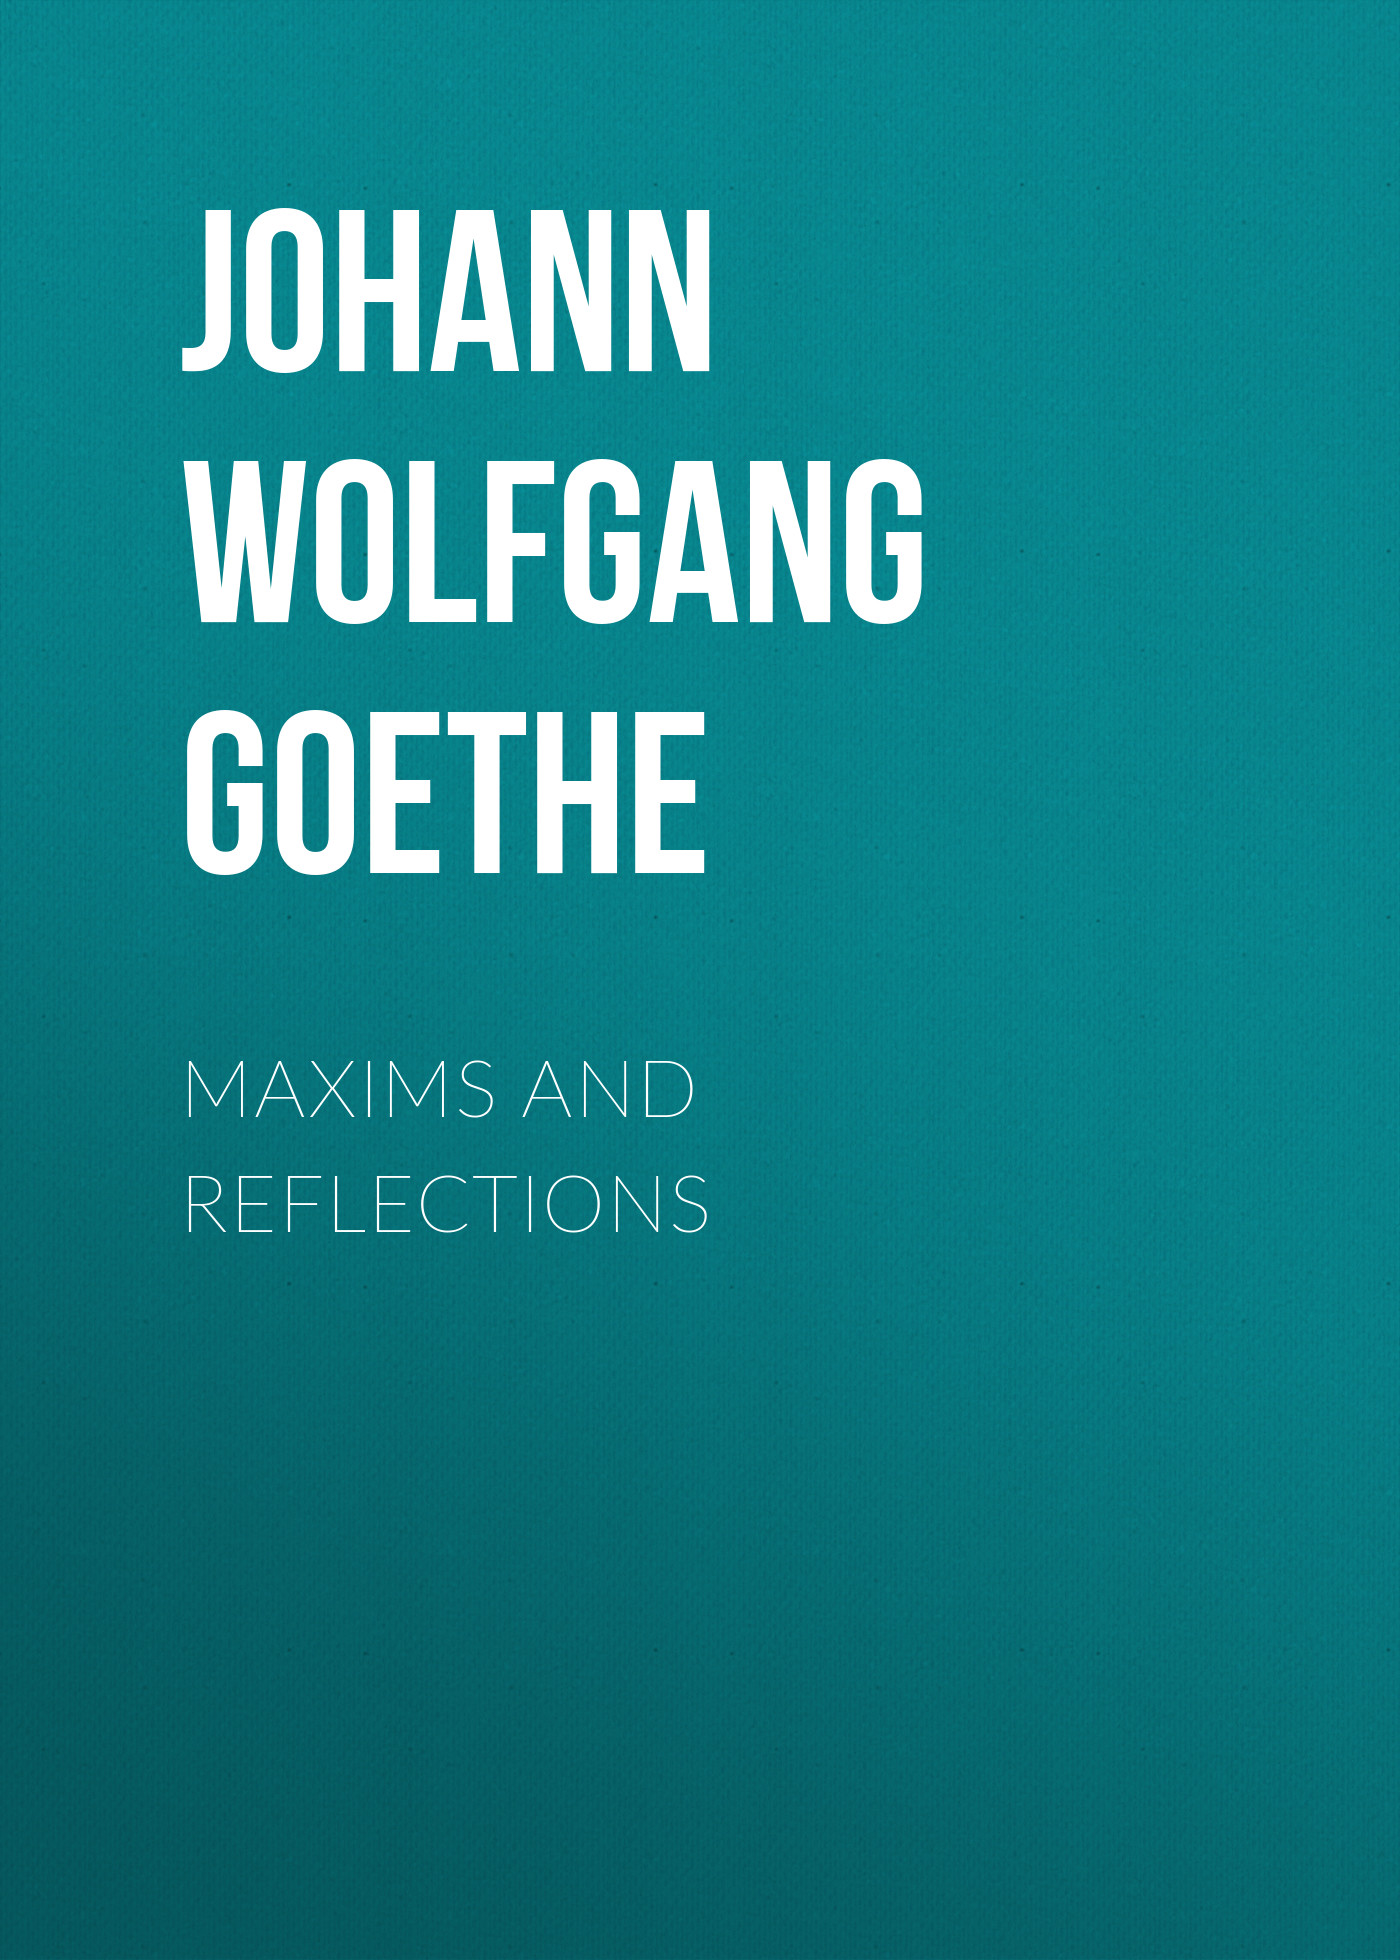 Книга Maxims and Reflections из серии , созданная Johann von Goethe, может относится к жанру Зарубежная старинная литература, Зарубежная классика. Стоимость электронной книги Maxims and Reflections с идентификатором 24936797 составляет 0 руб.